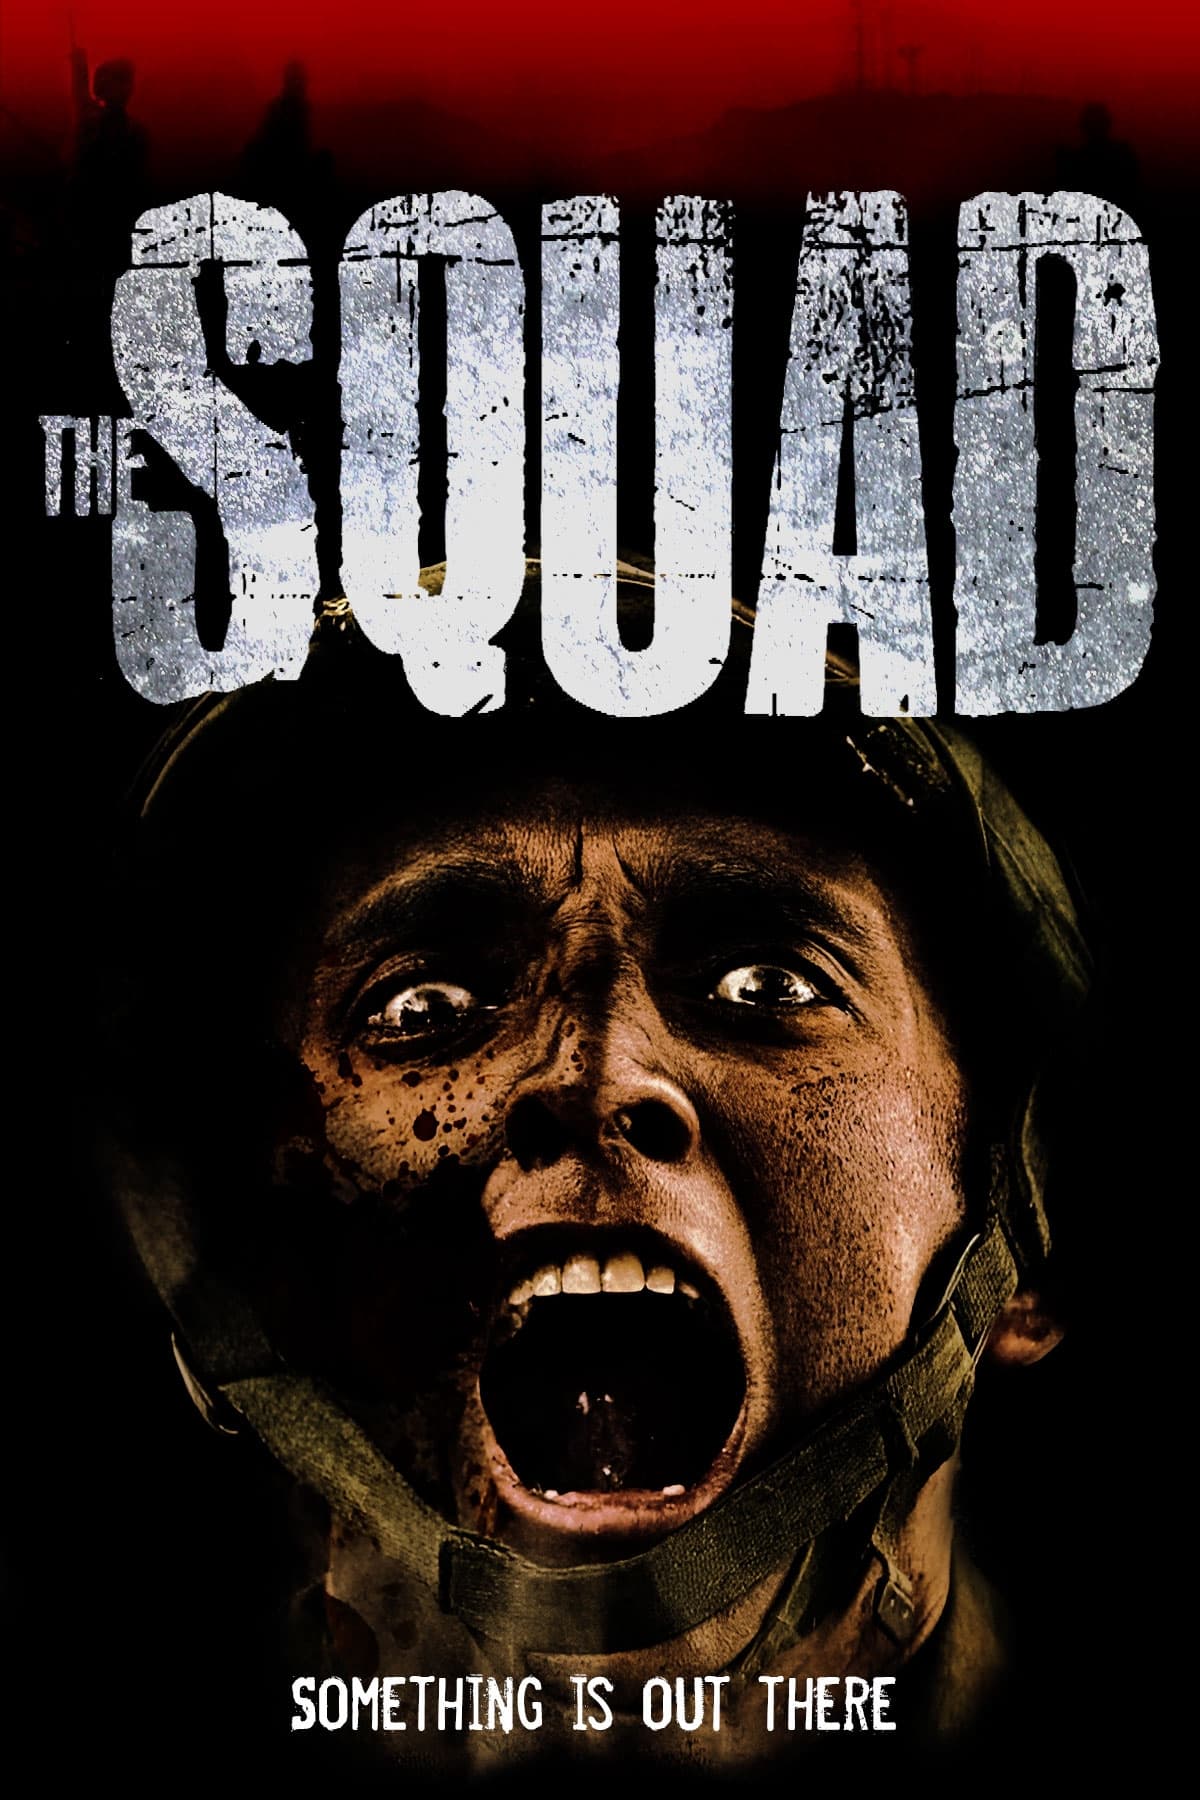 The Squad (2011)